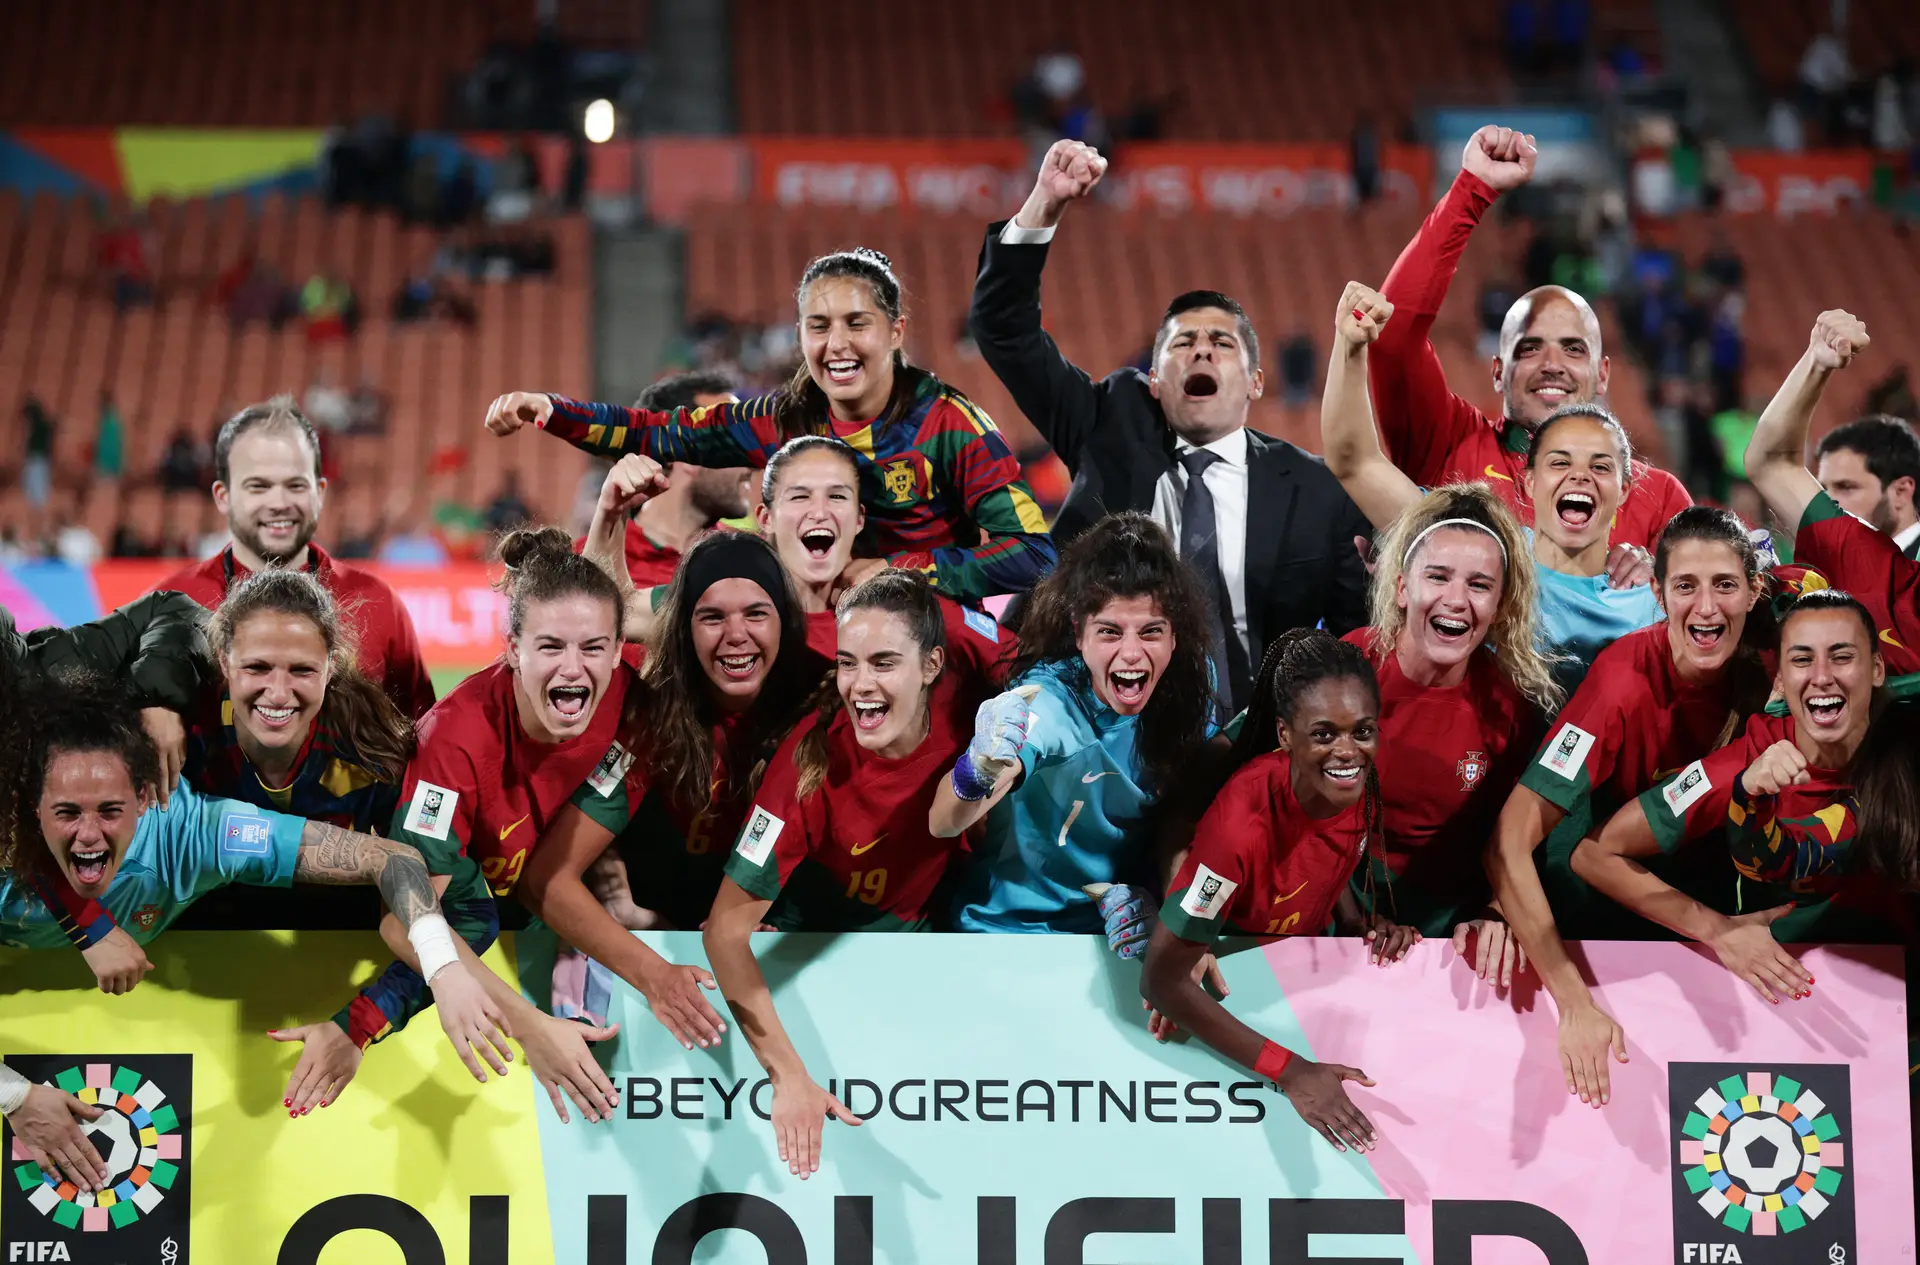 Selecção nacional feminina faz história e vai ao Mundial de futebol, Futebol feminino